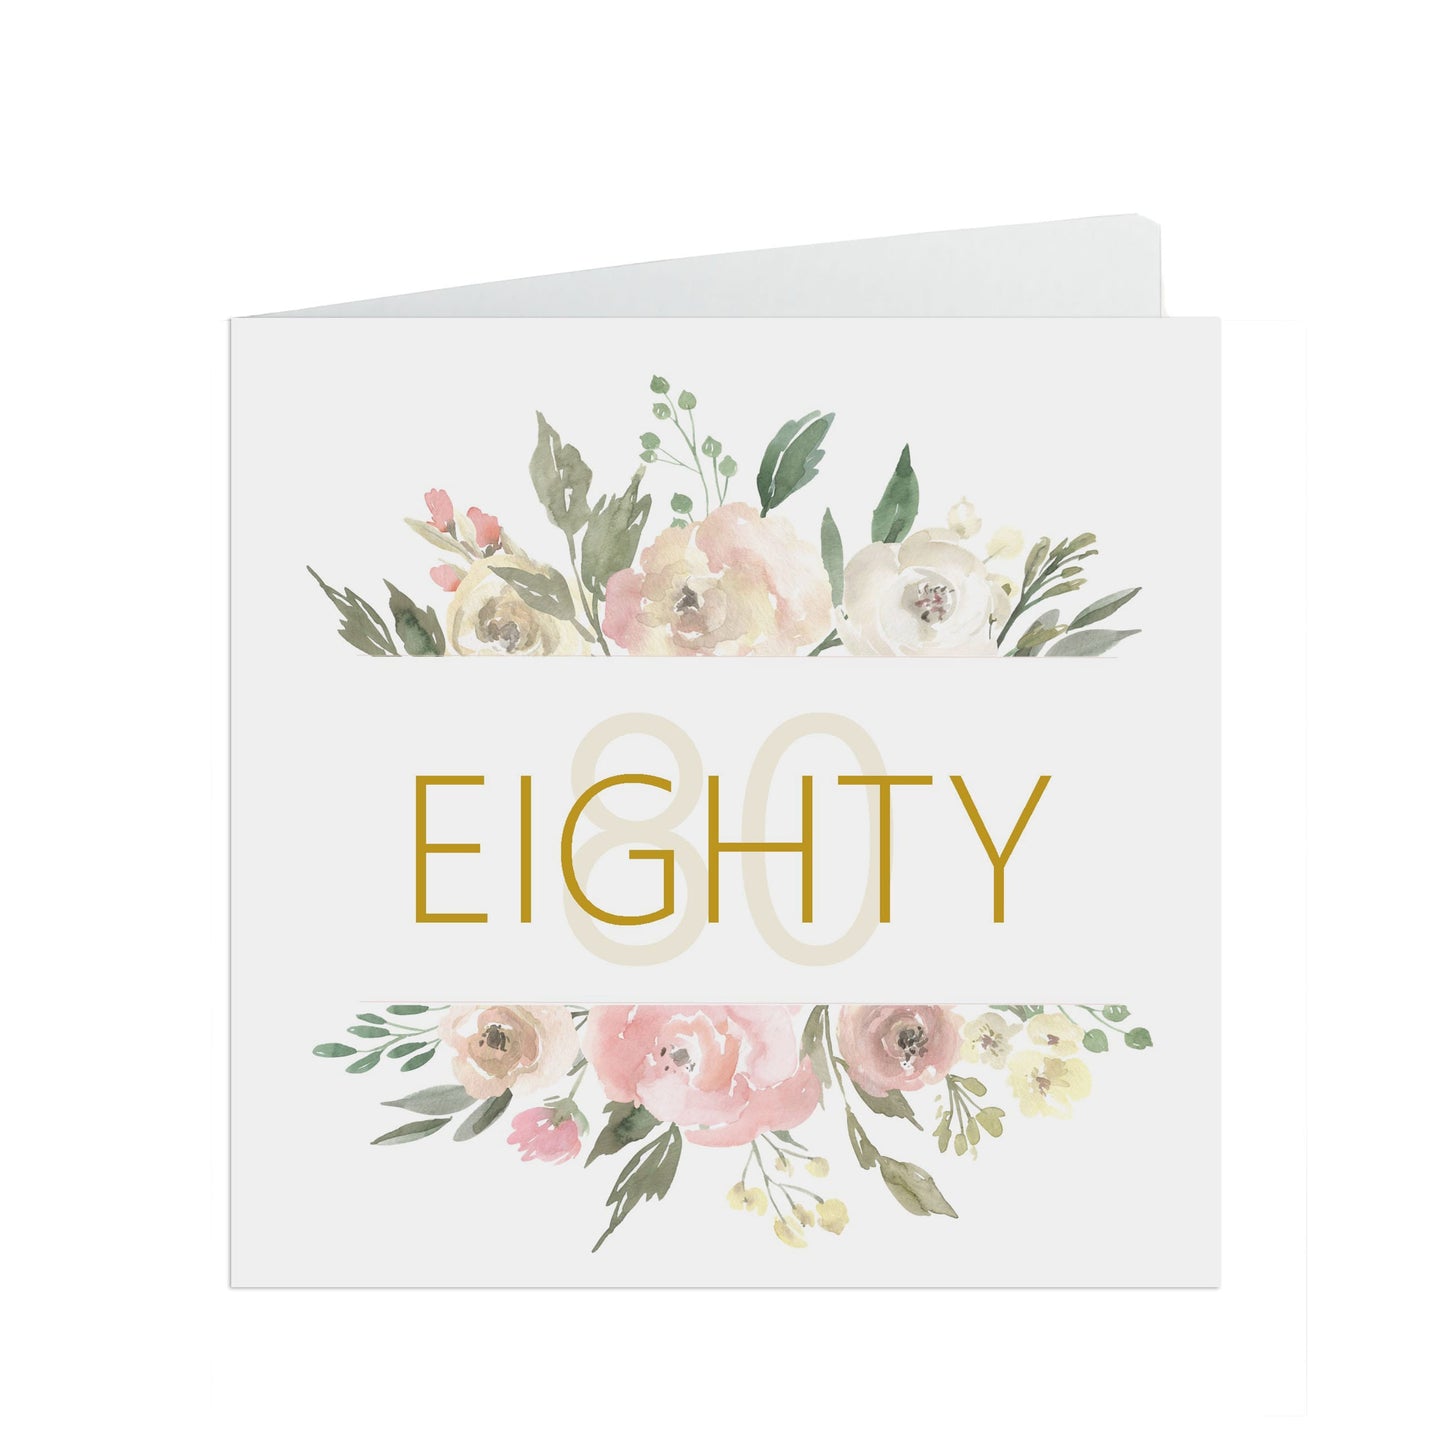 80th Birthday Card, Eighty Blush Flowers Border